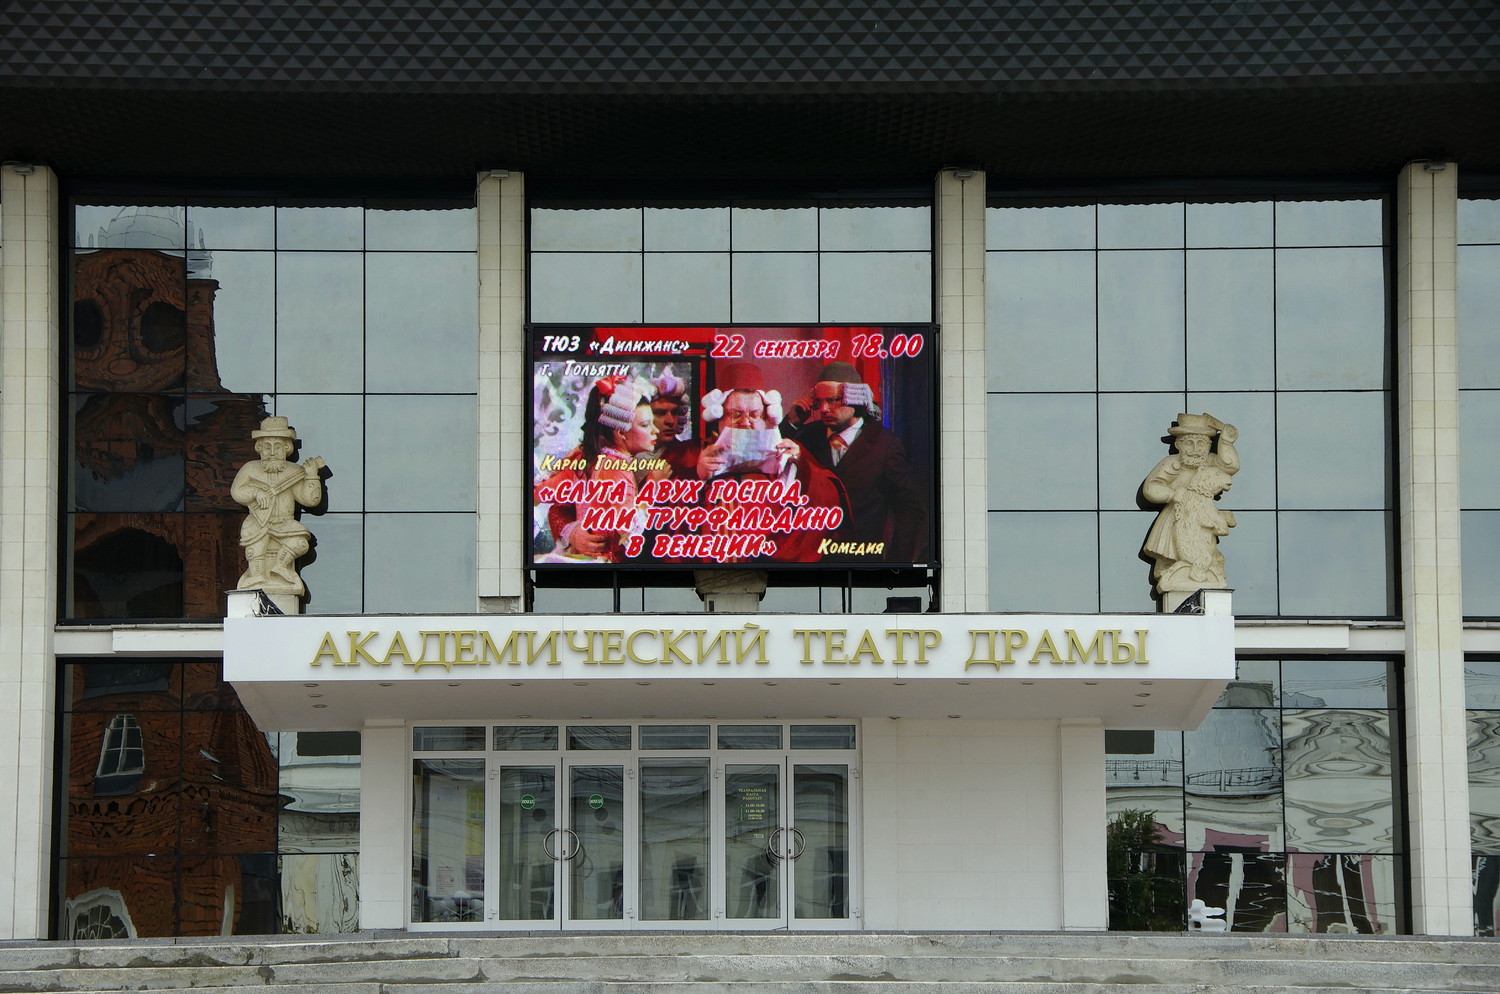 Театр "Дилижанс" примет участие в фестивале "У Золотых ворот" (г. Владимир)